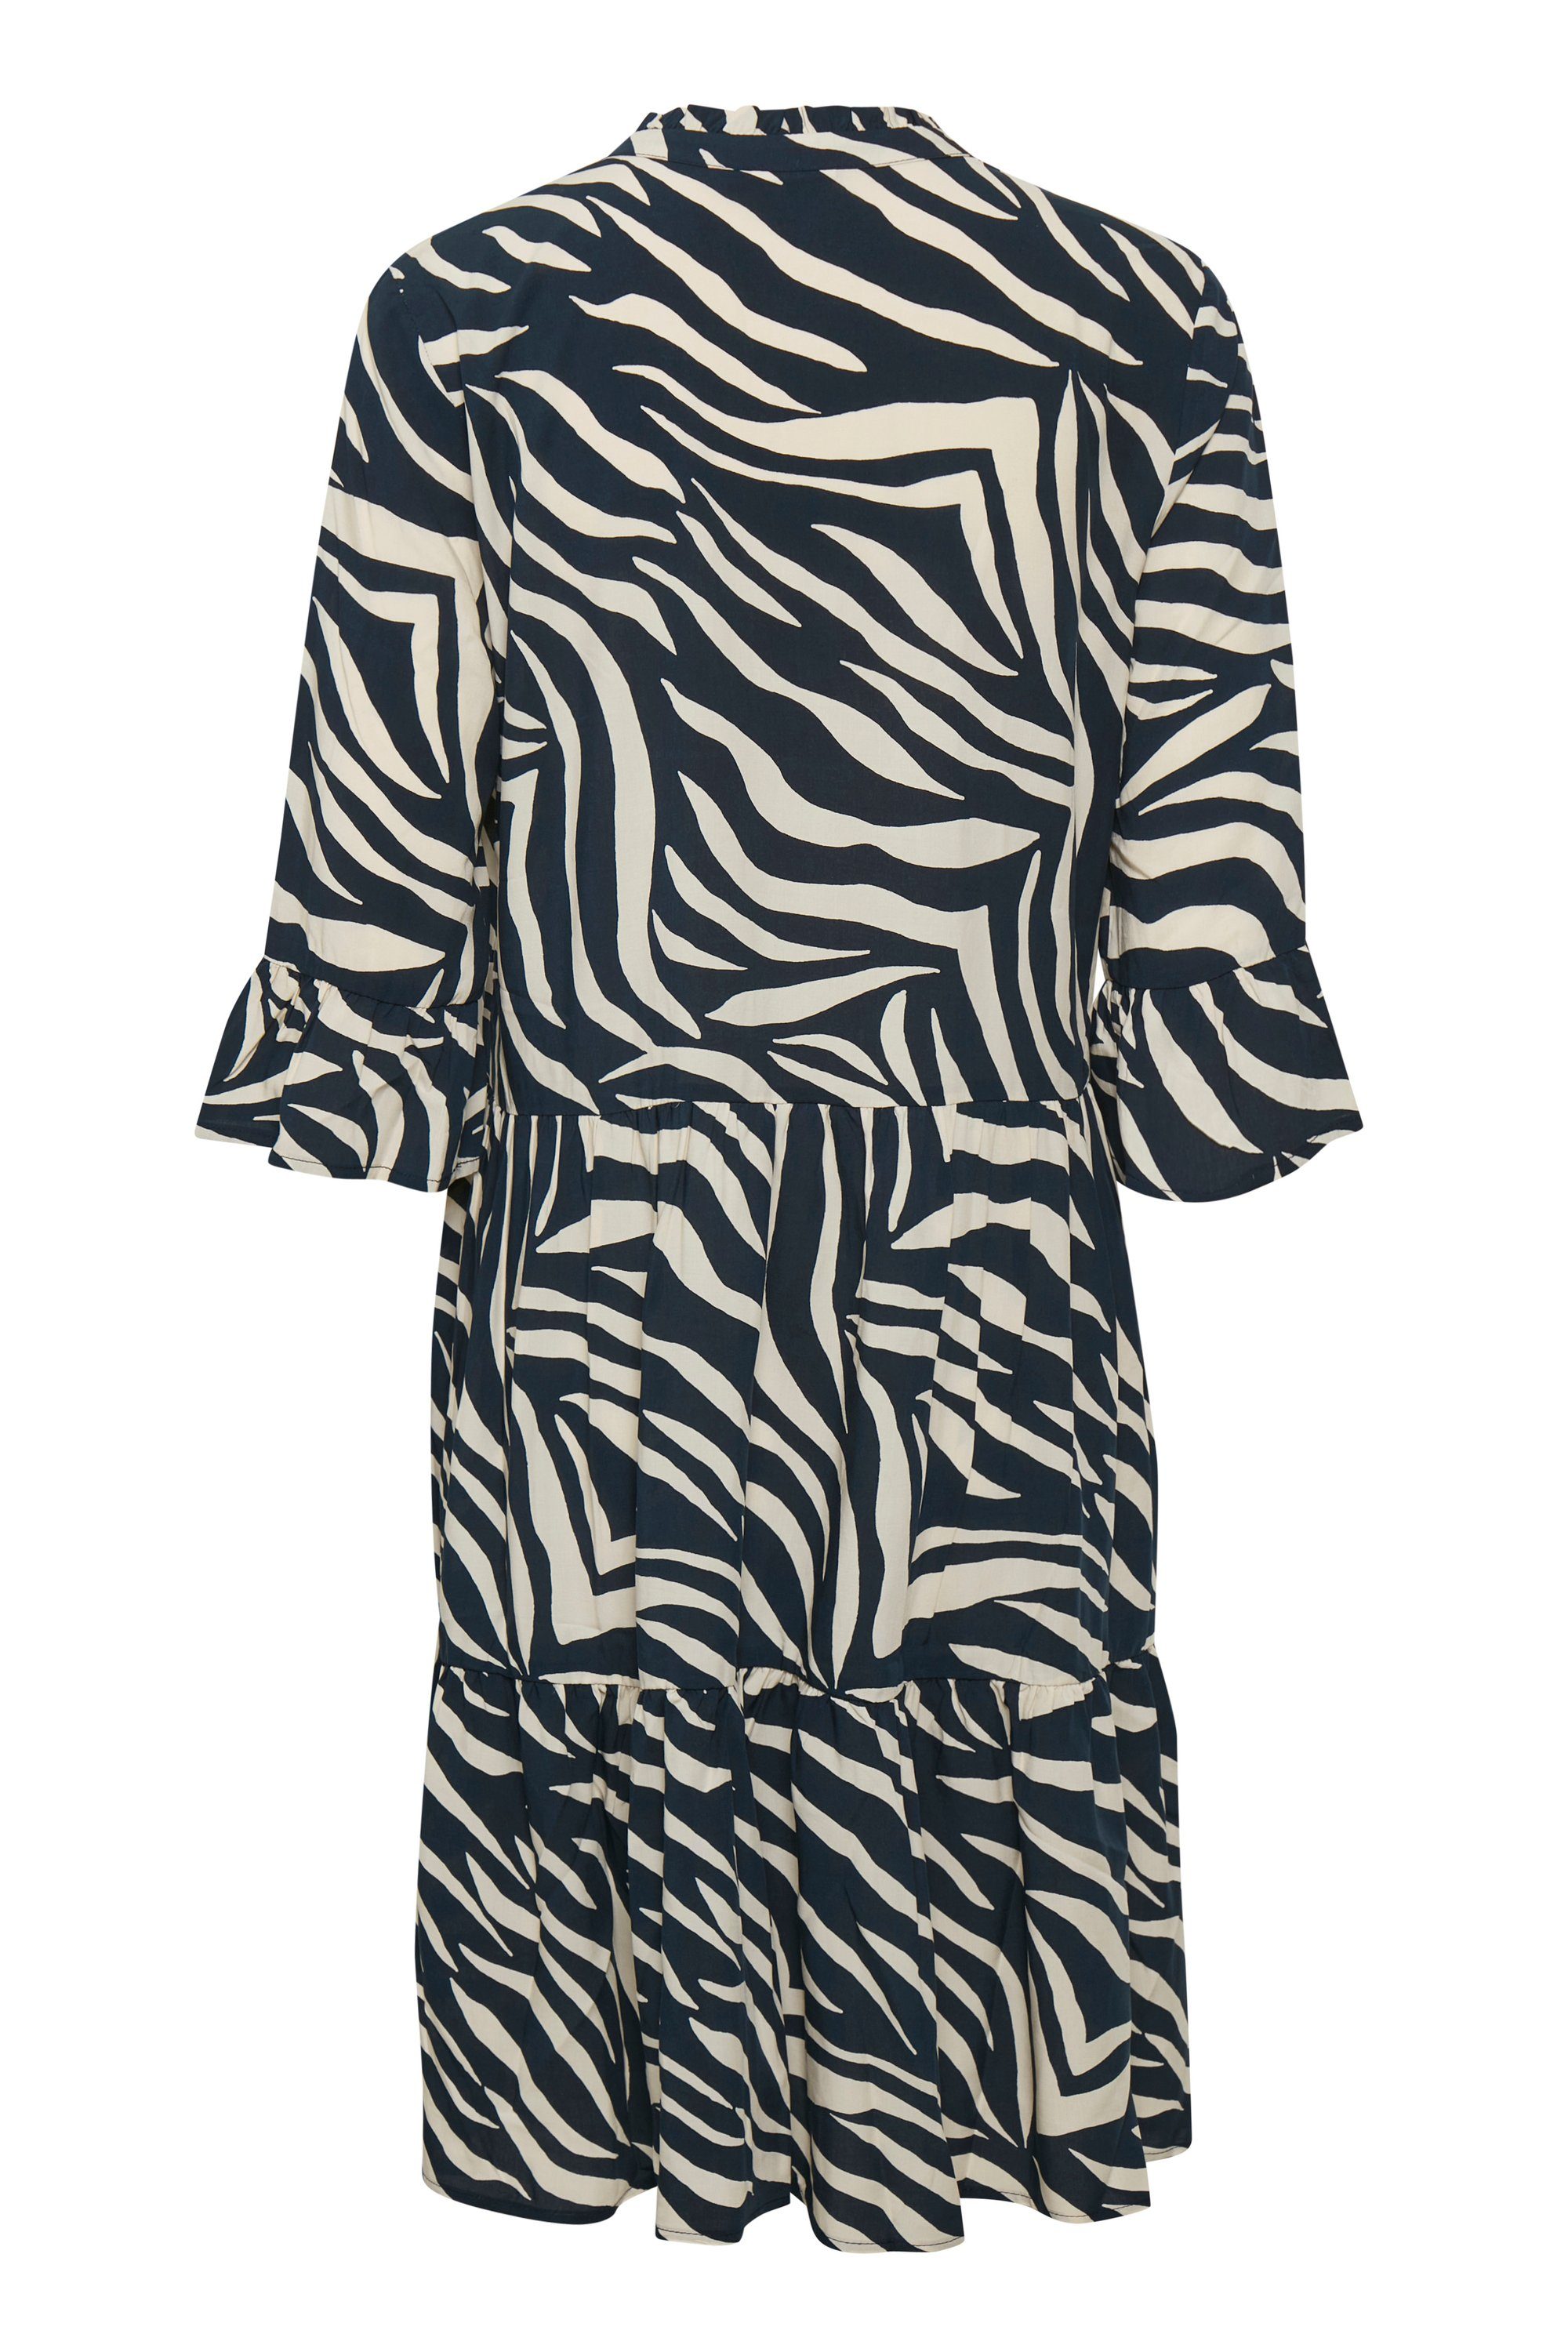 Zebra Eclipse Dress Skin Jerseykleid EdaSZ Tropez Total Saint